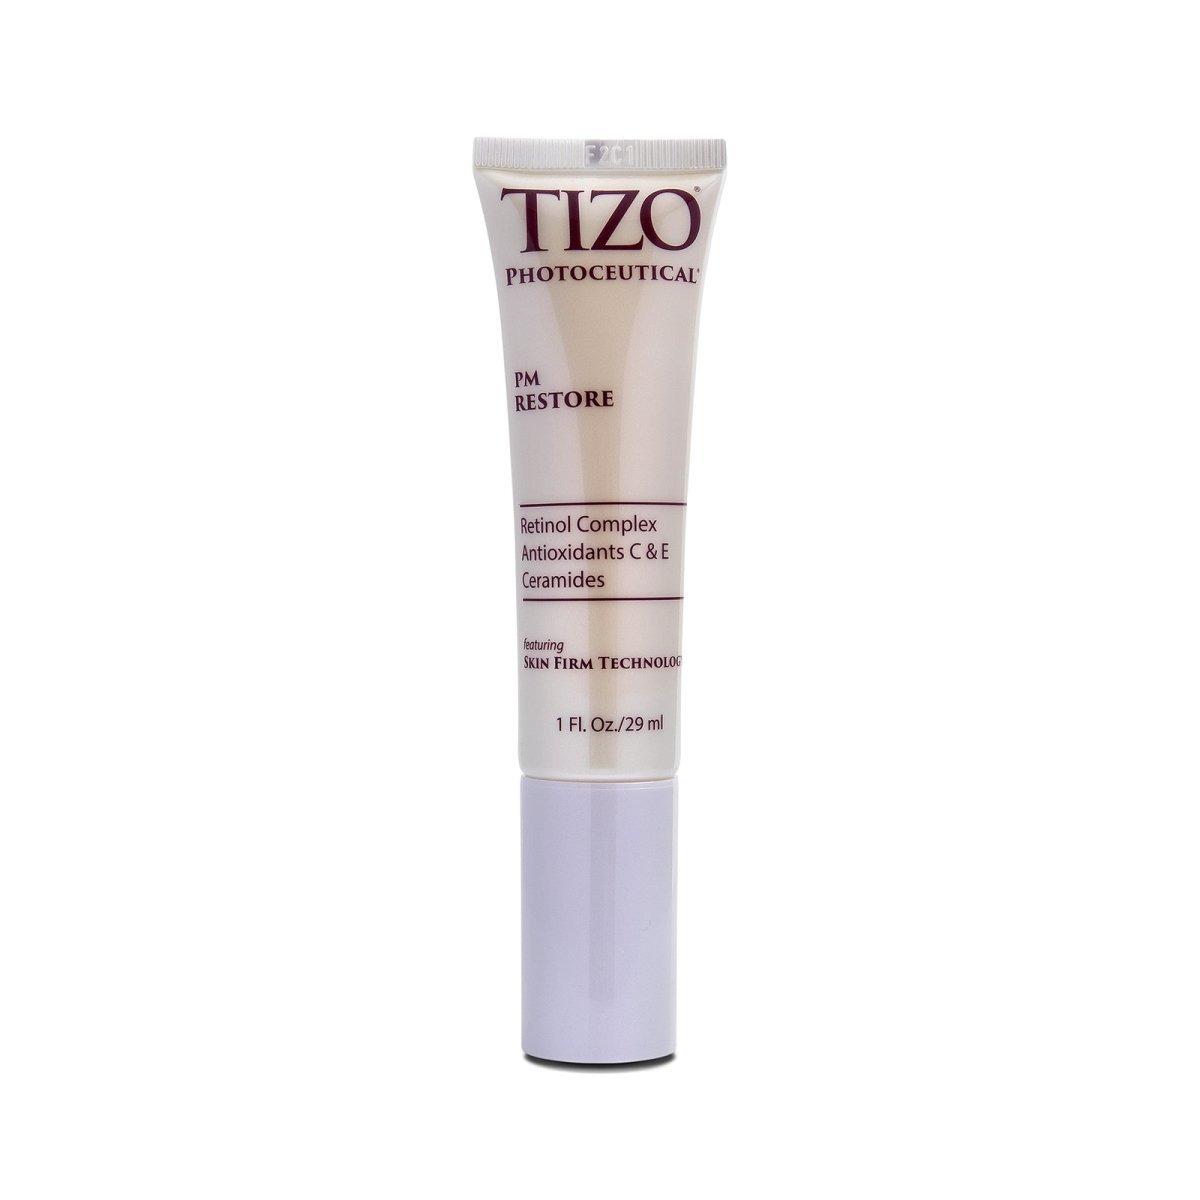 TIZO Photoceutical PM Restore - SkincareEssentials